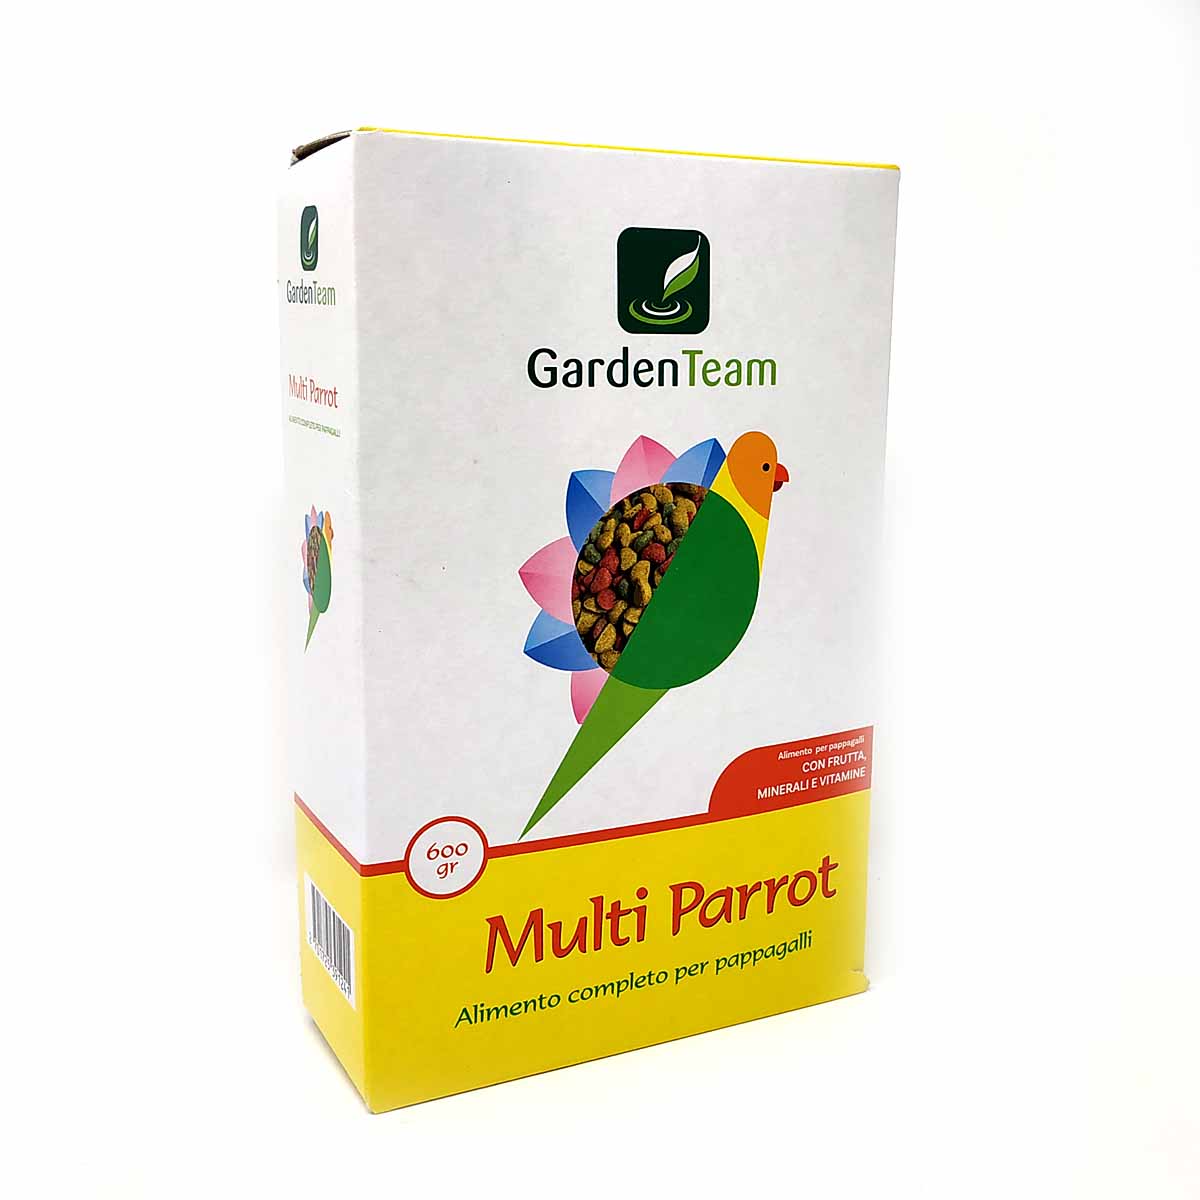 Multi Parrot – Alimento completo per pappagalli